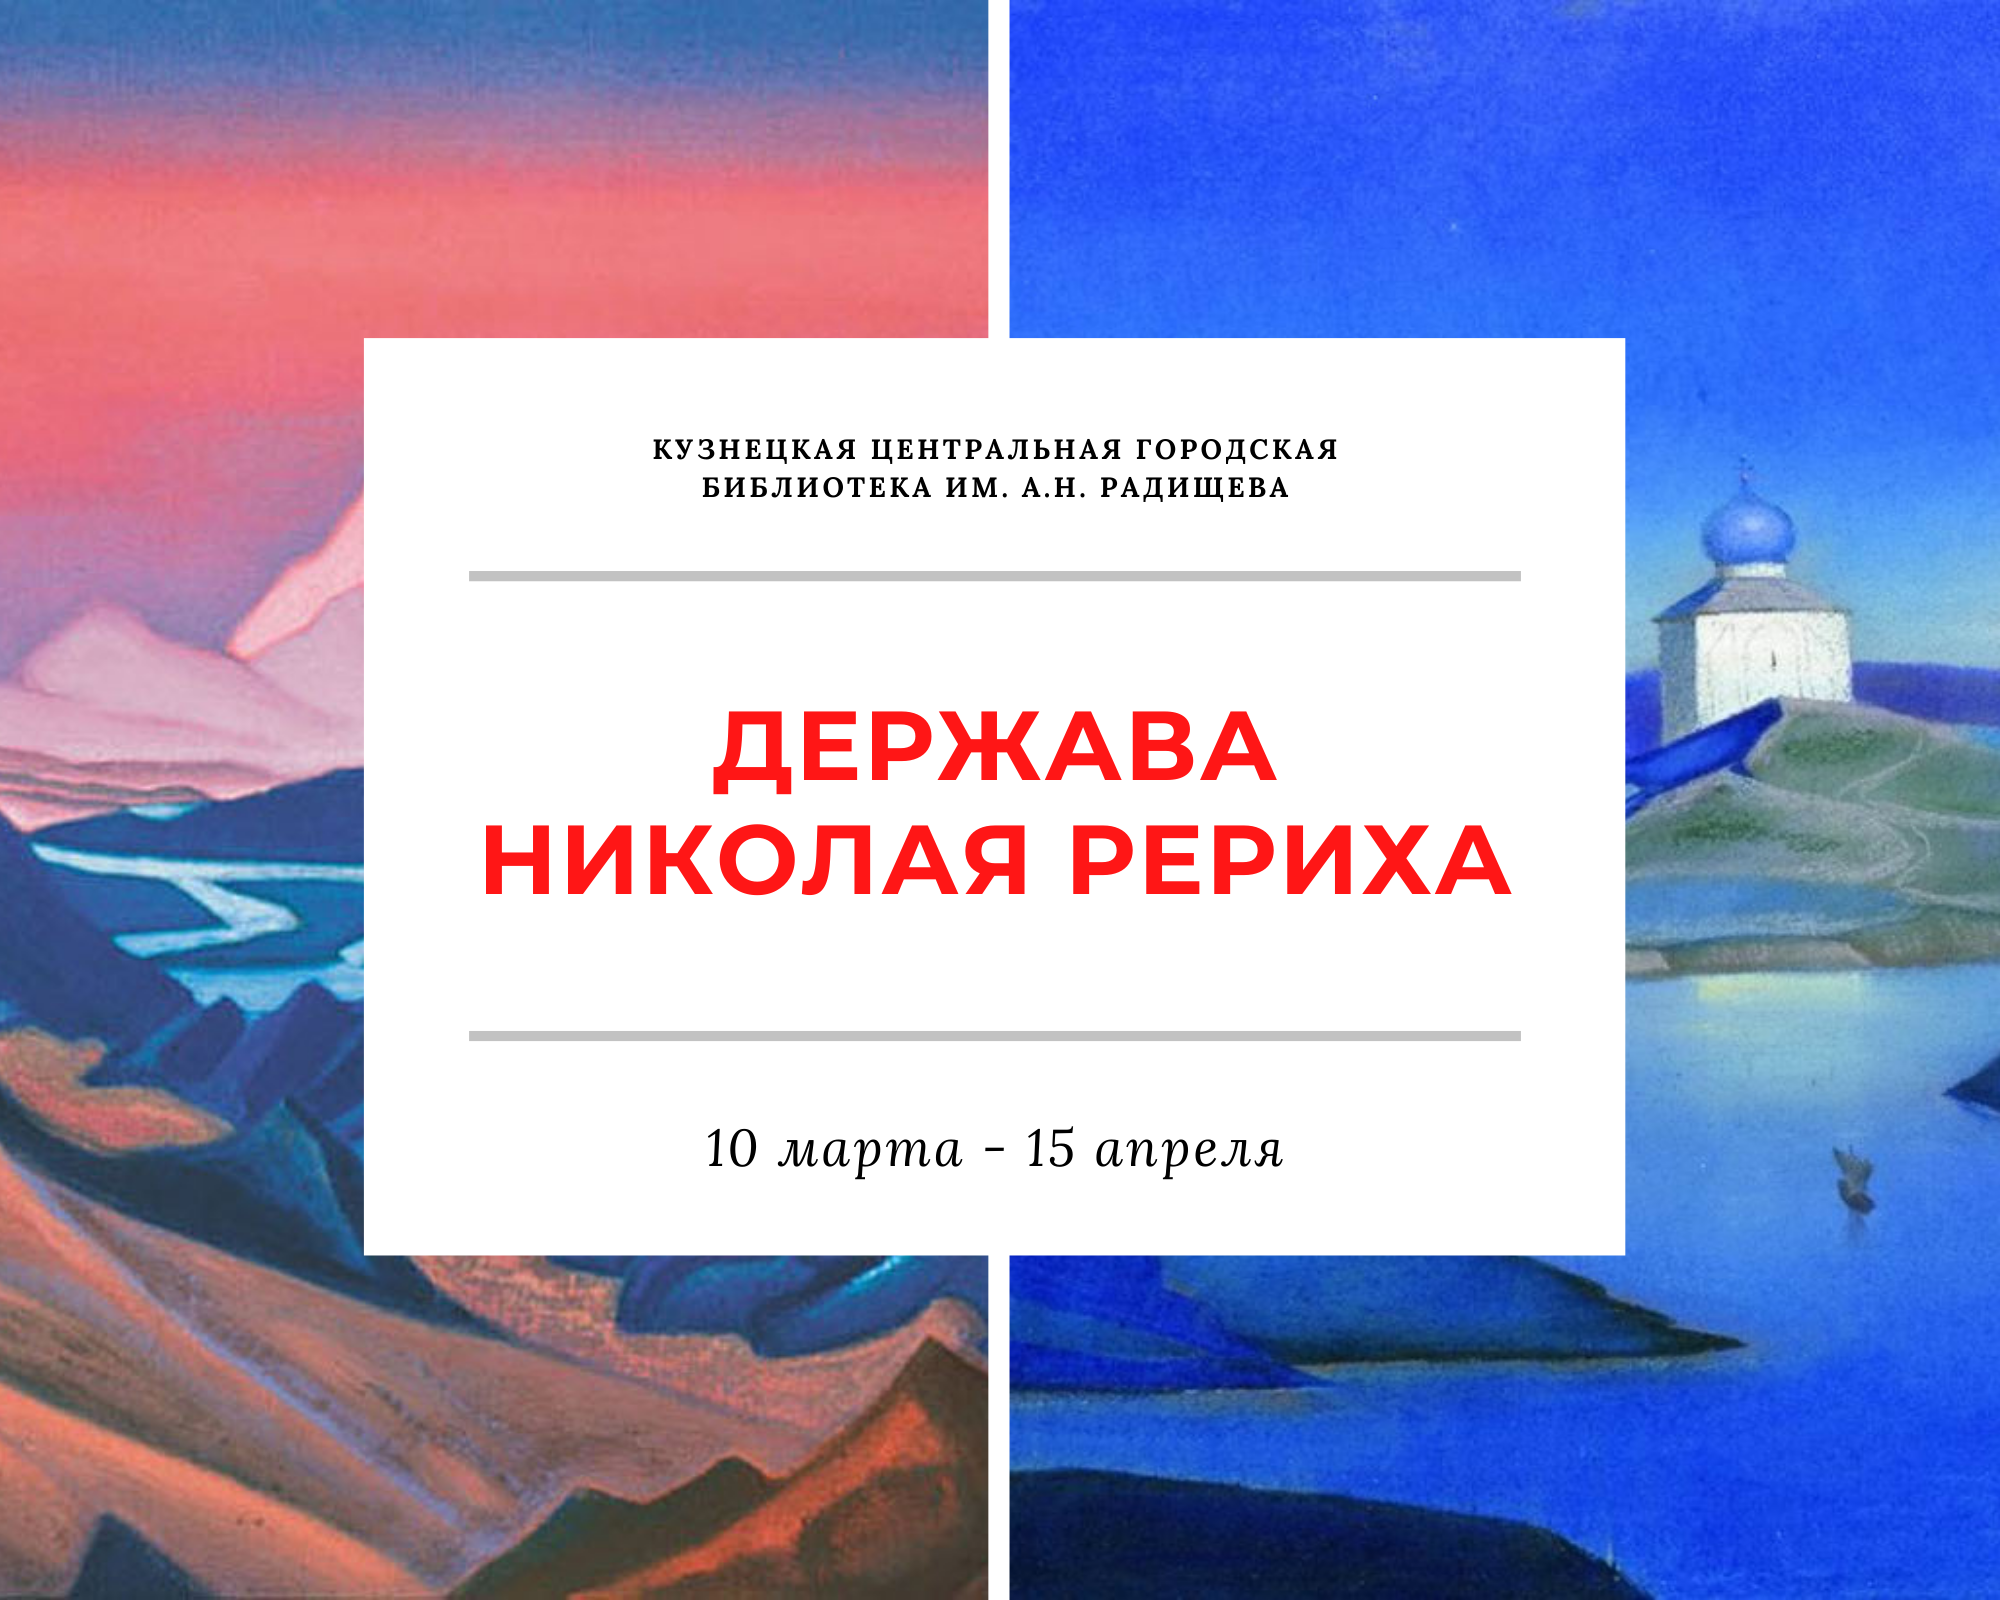 В центральной городской библиотеке открывается экспозиция репродукций картин Николая Рериха